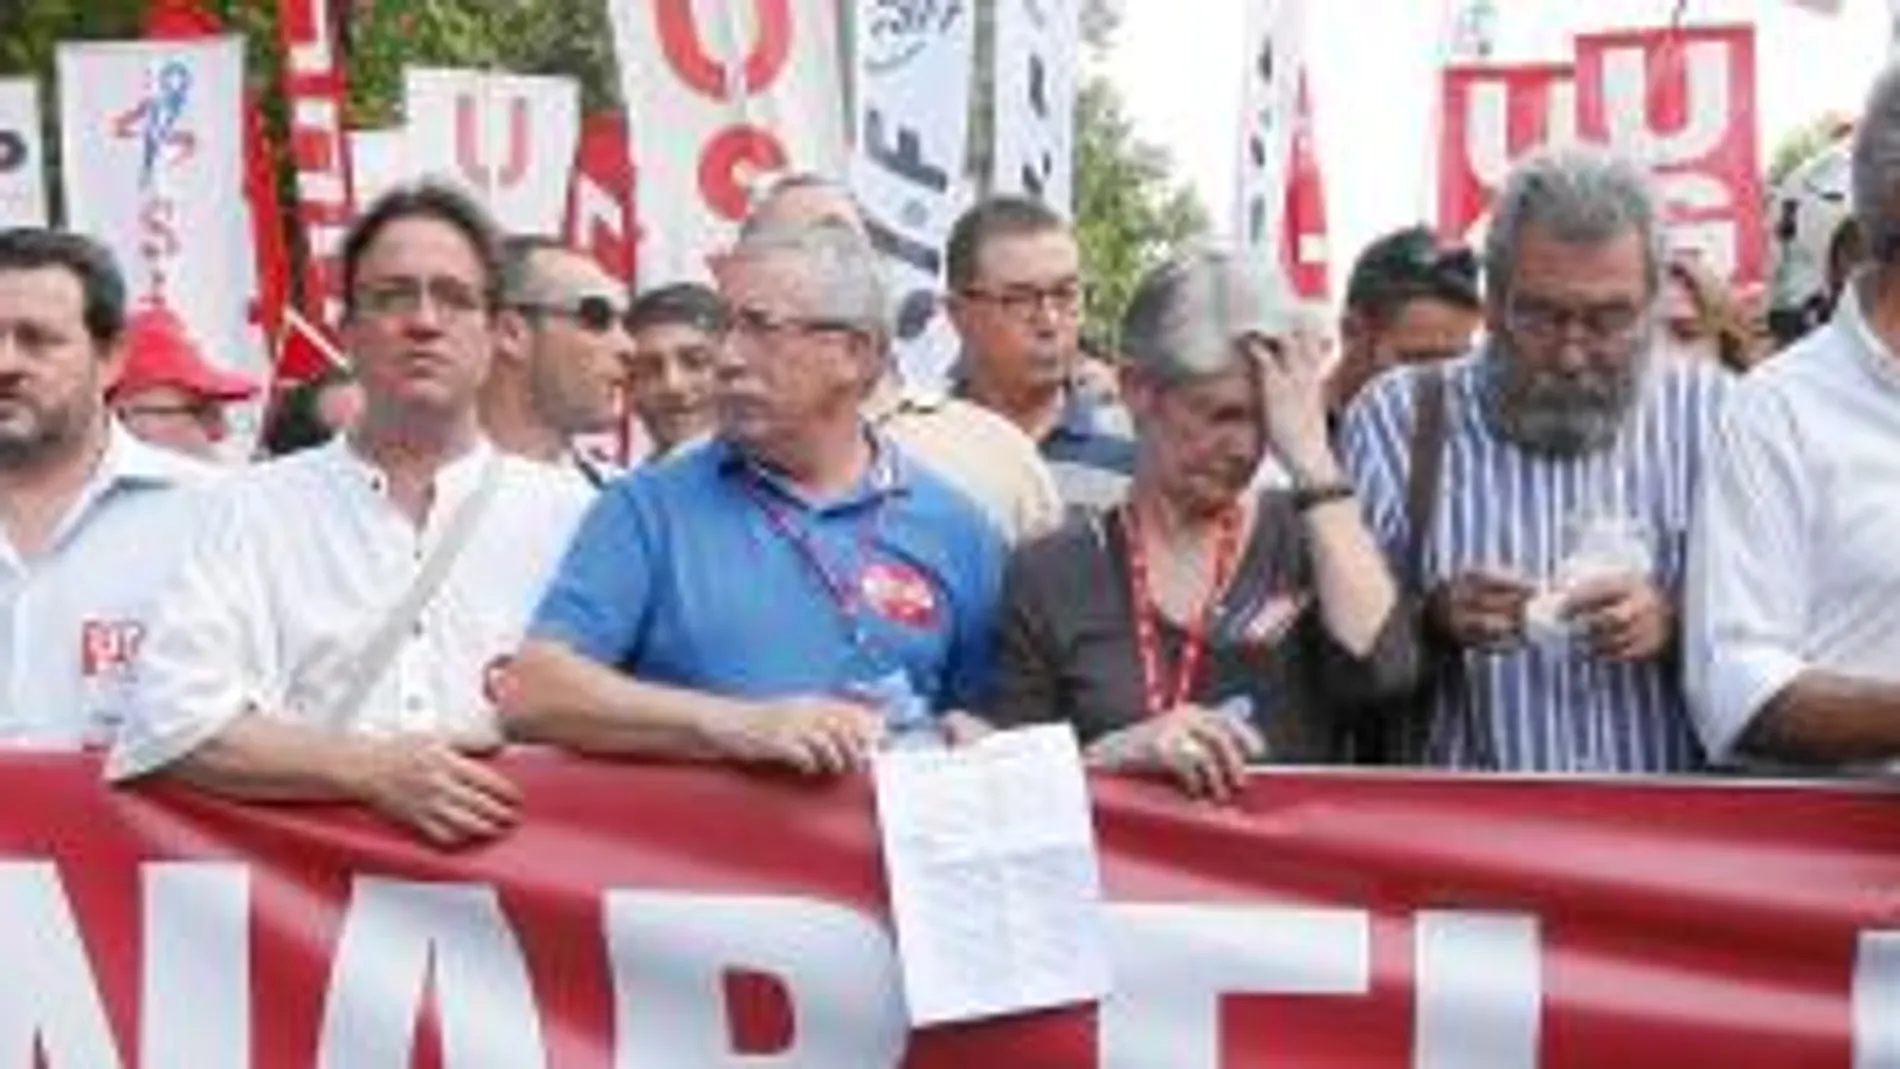 Fernández Toxo y Cándido Méndez, en la cabecera de una manifestación contra las reformas del Gobierno